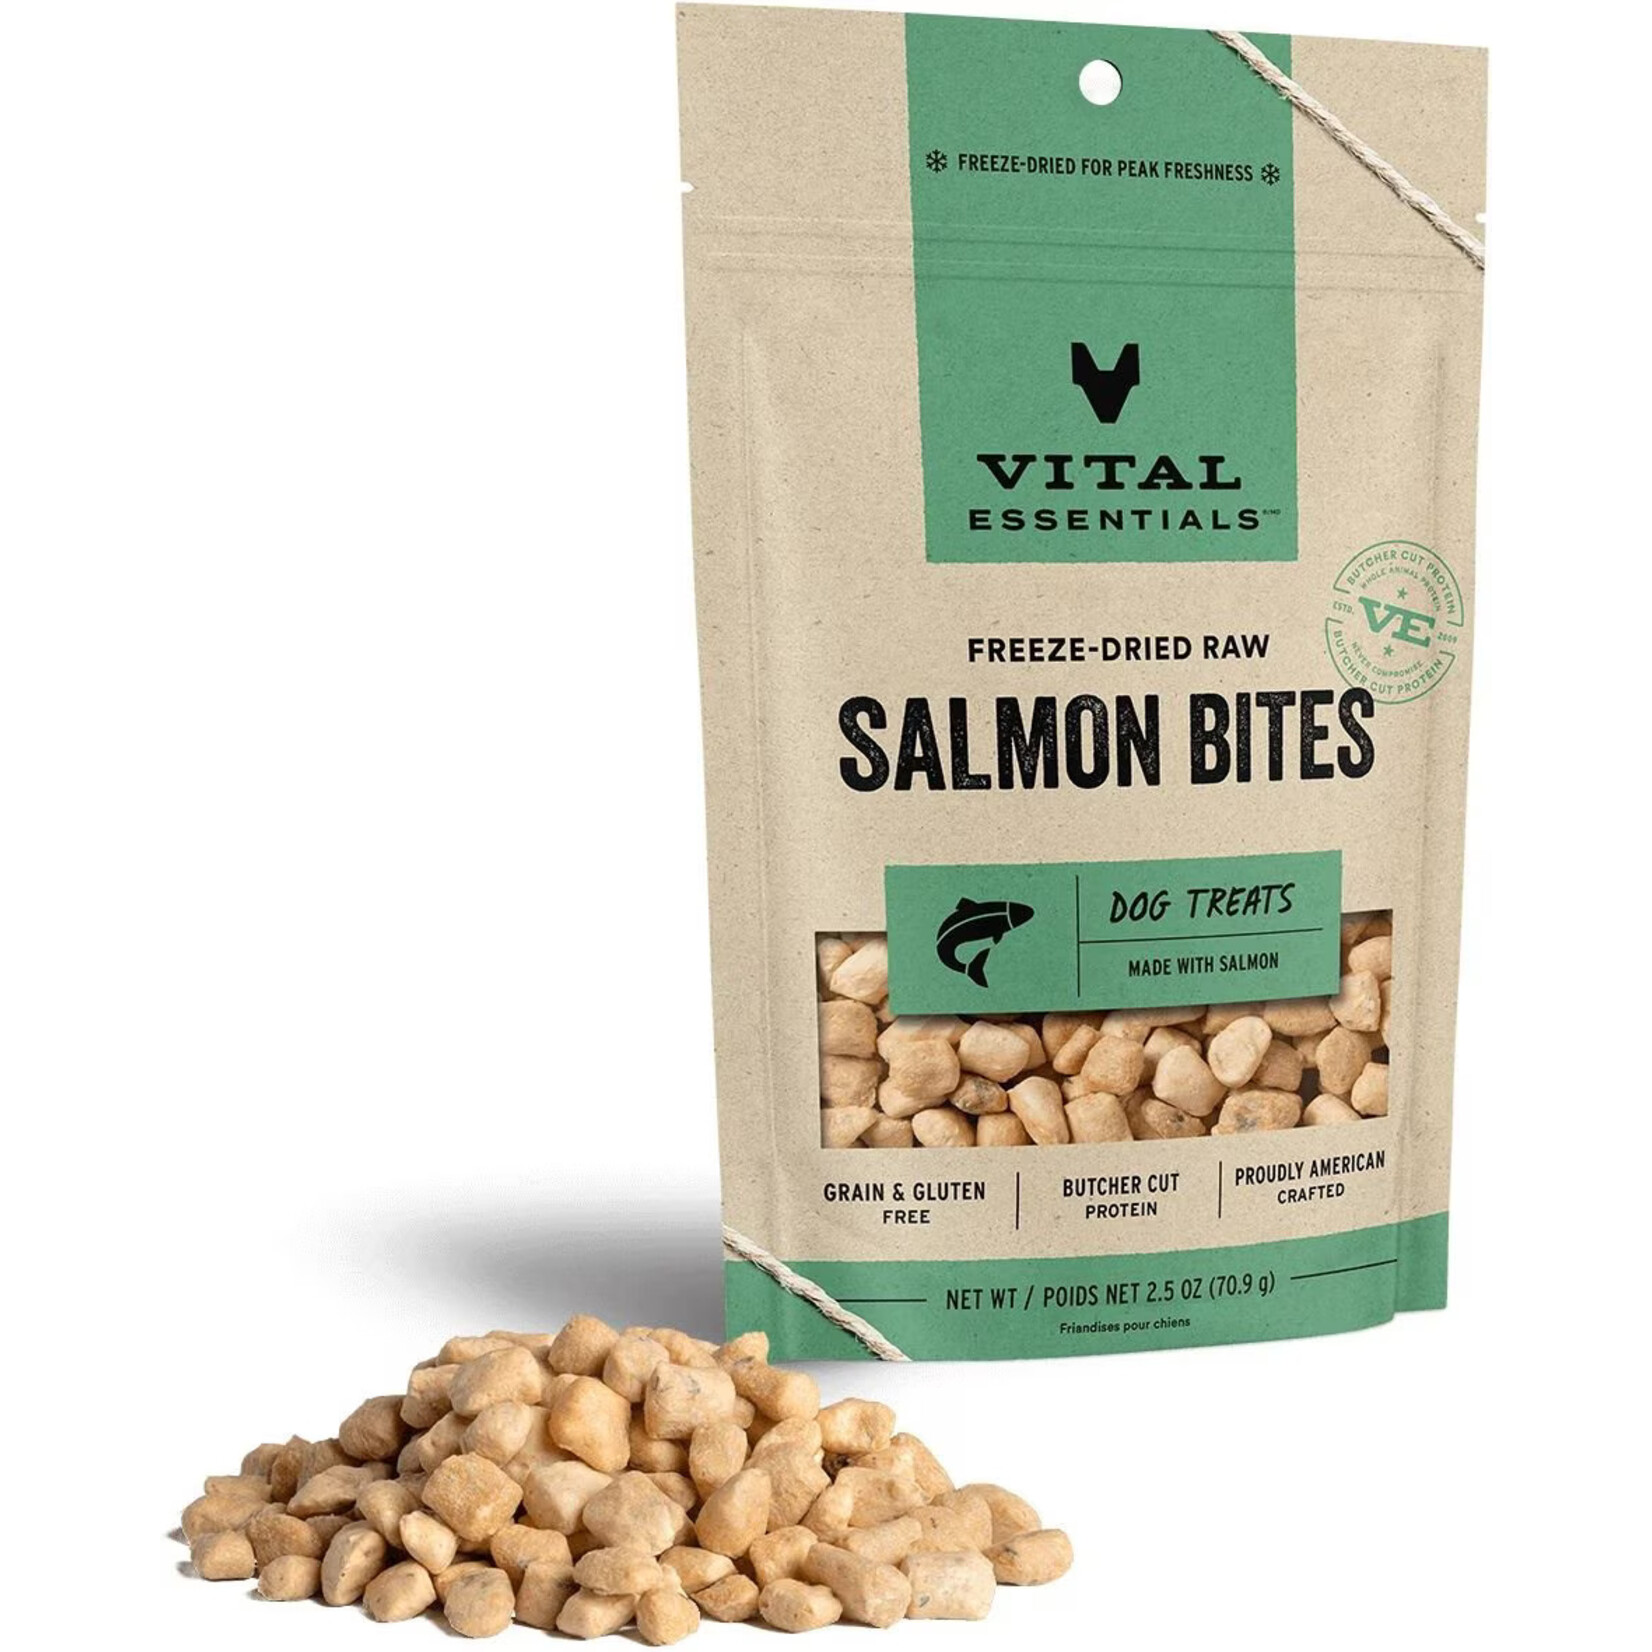 Vital Essentials Vital Essentials Freeze-Dried Raw Salmon Bites Dog Treats